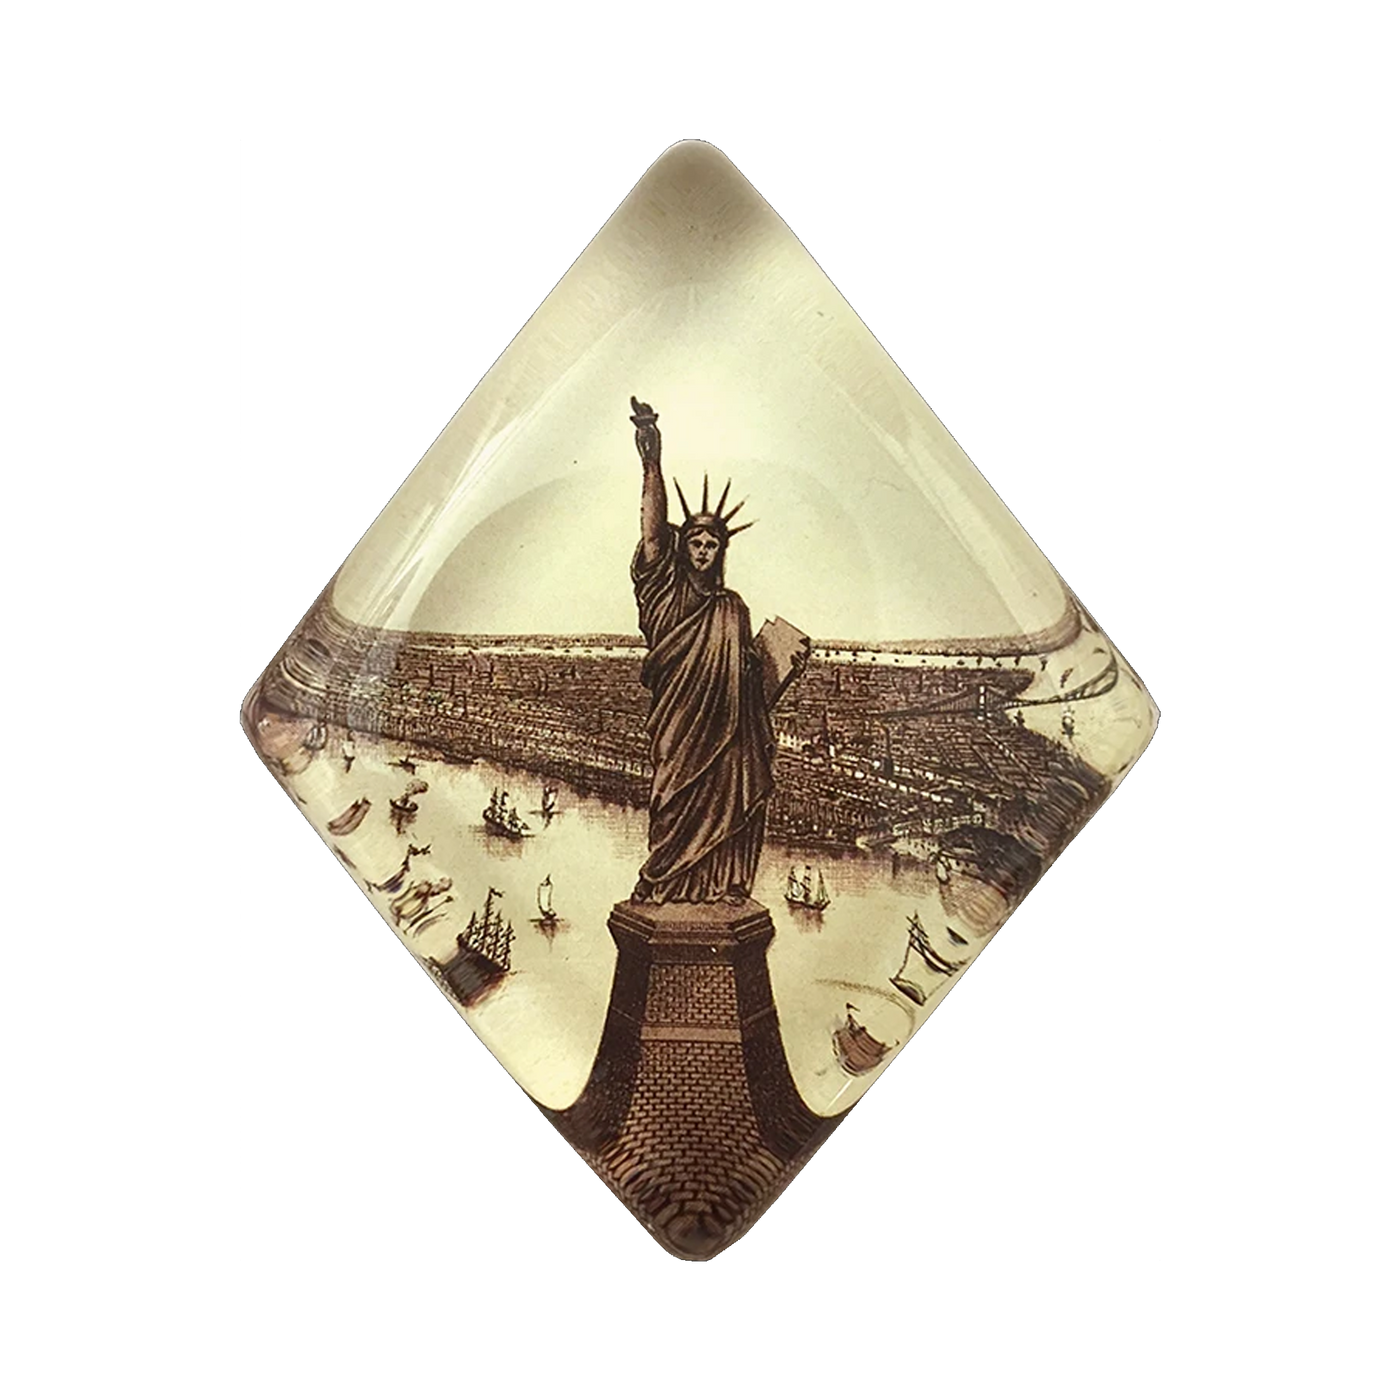 NYC Lady Liberty Diamond Charm Paperweight